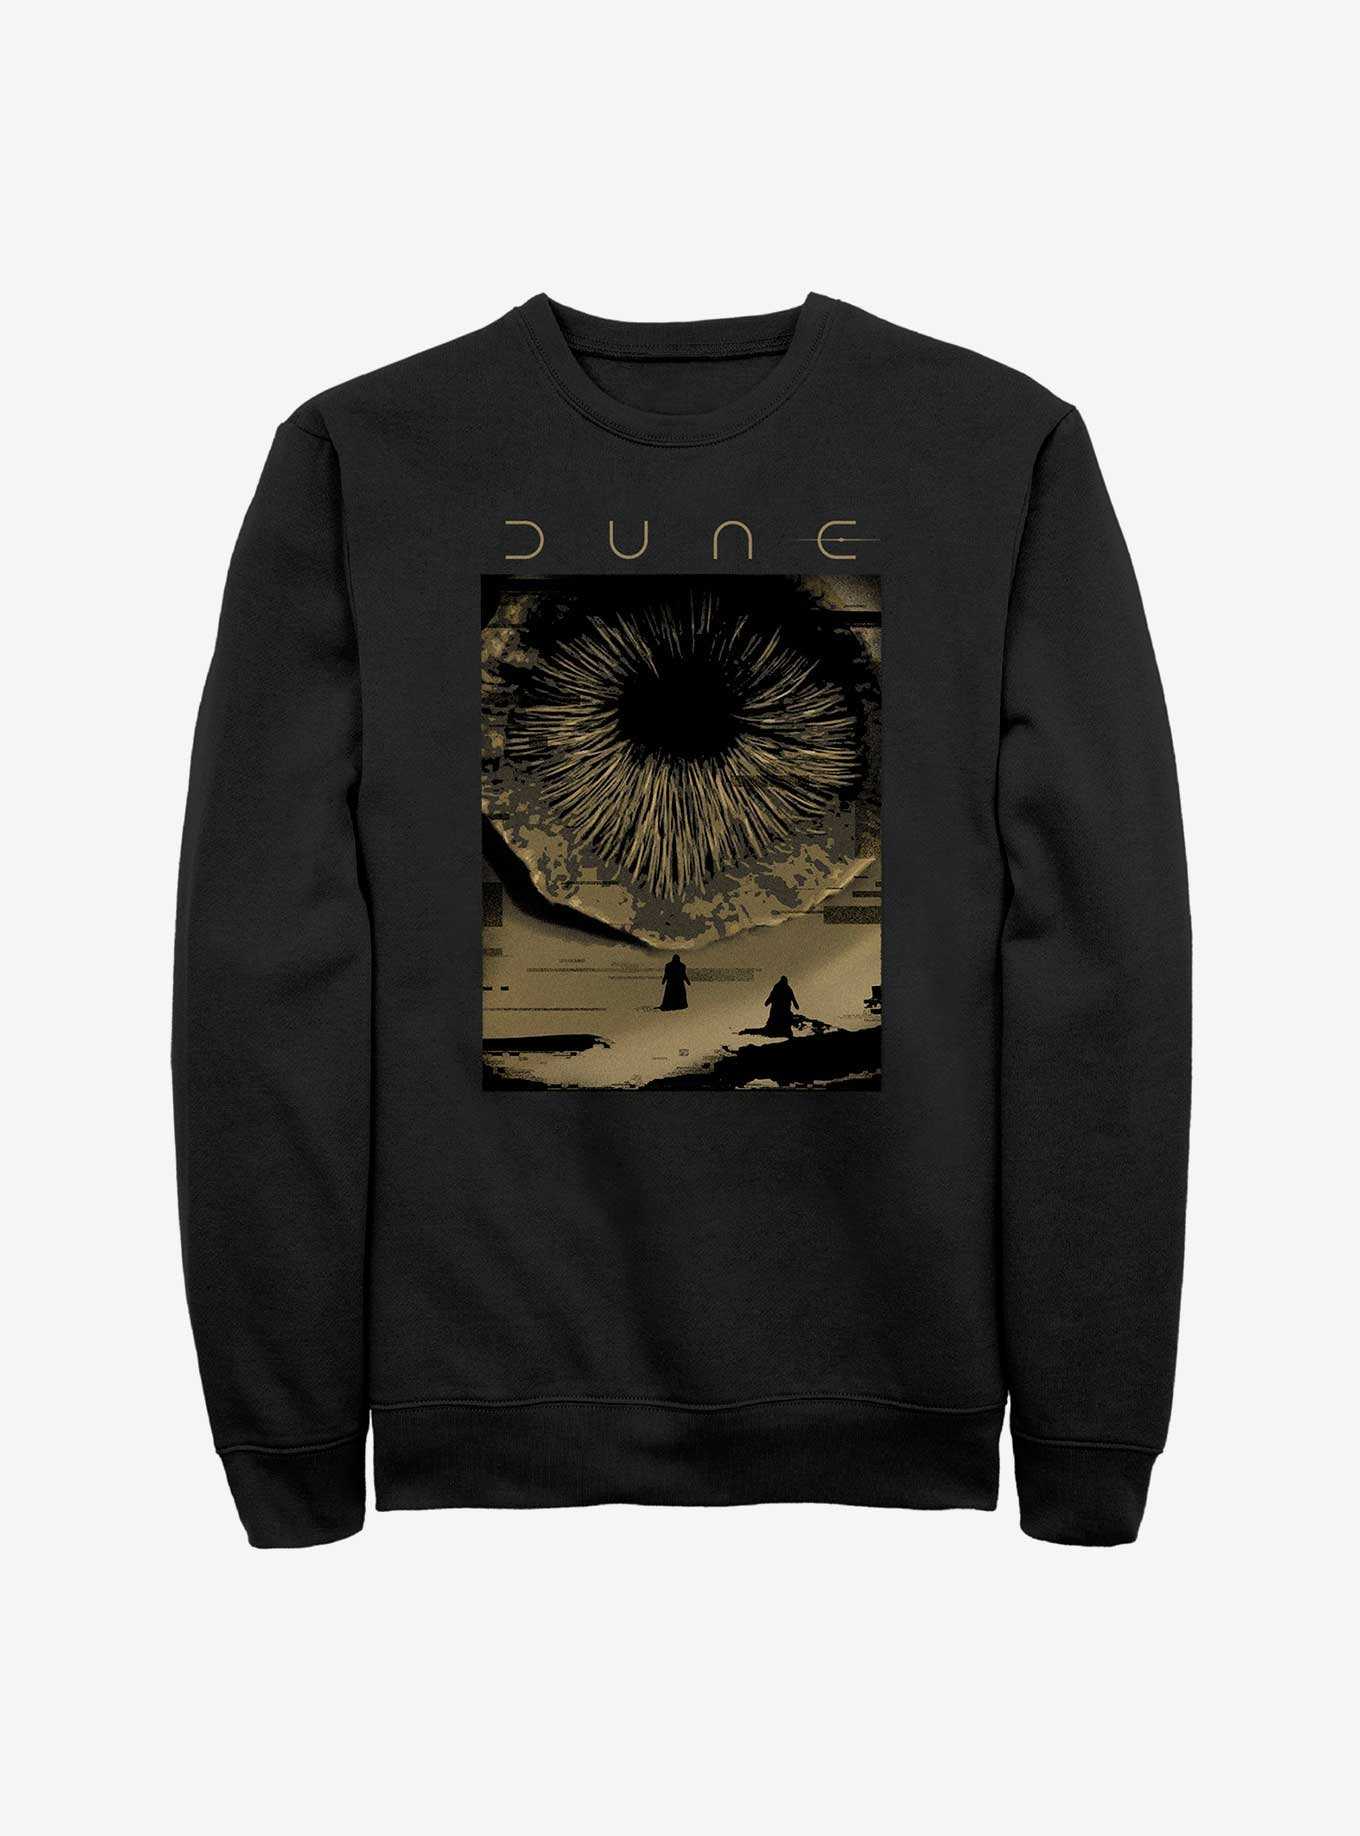 Dune Shai-Hulud Poster Sweatshirt, , hi-res